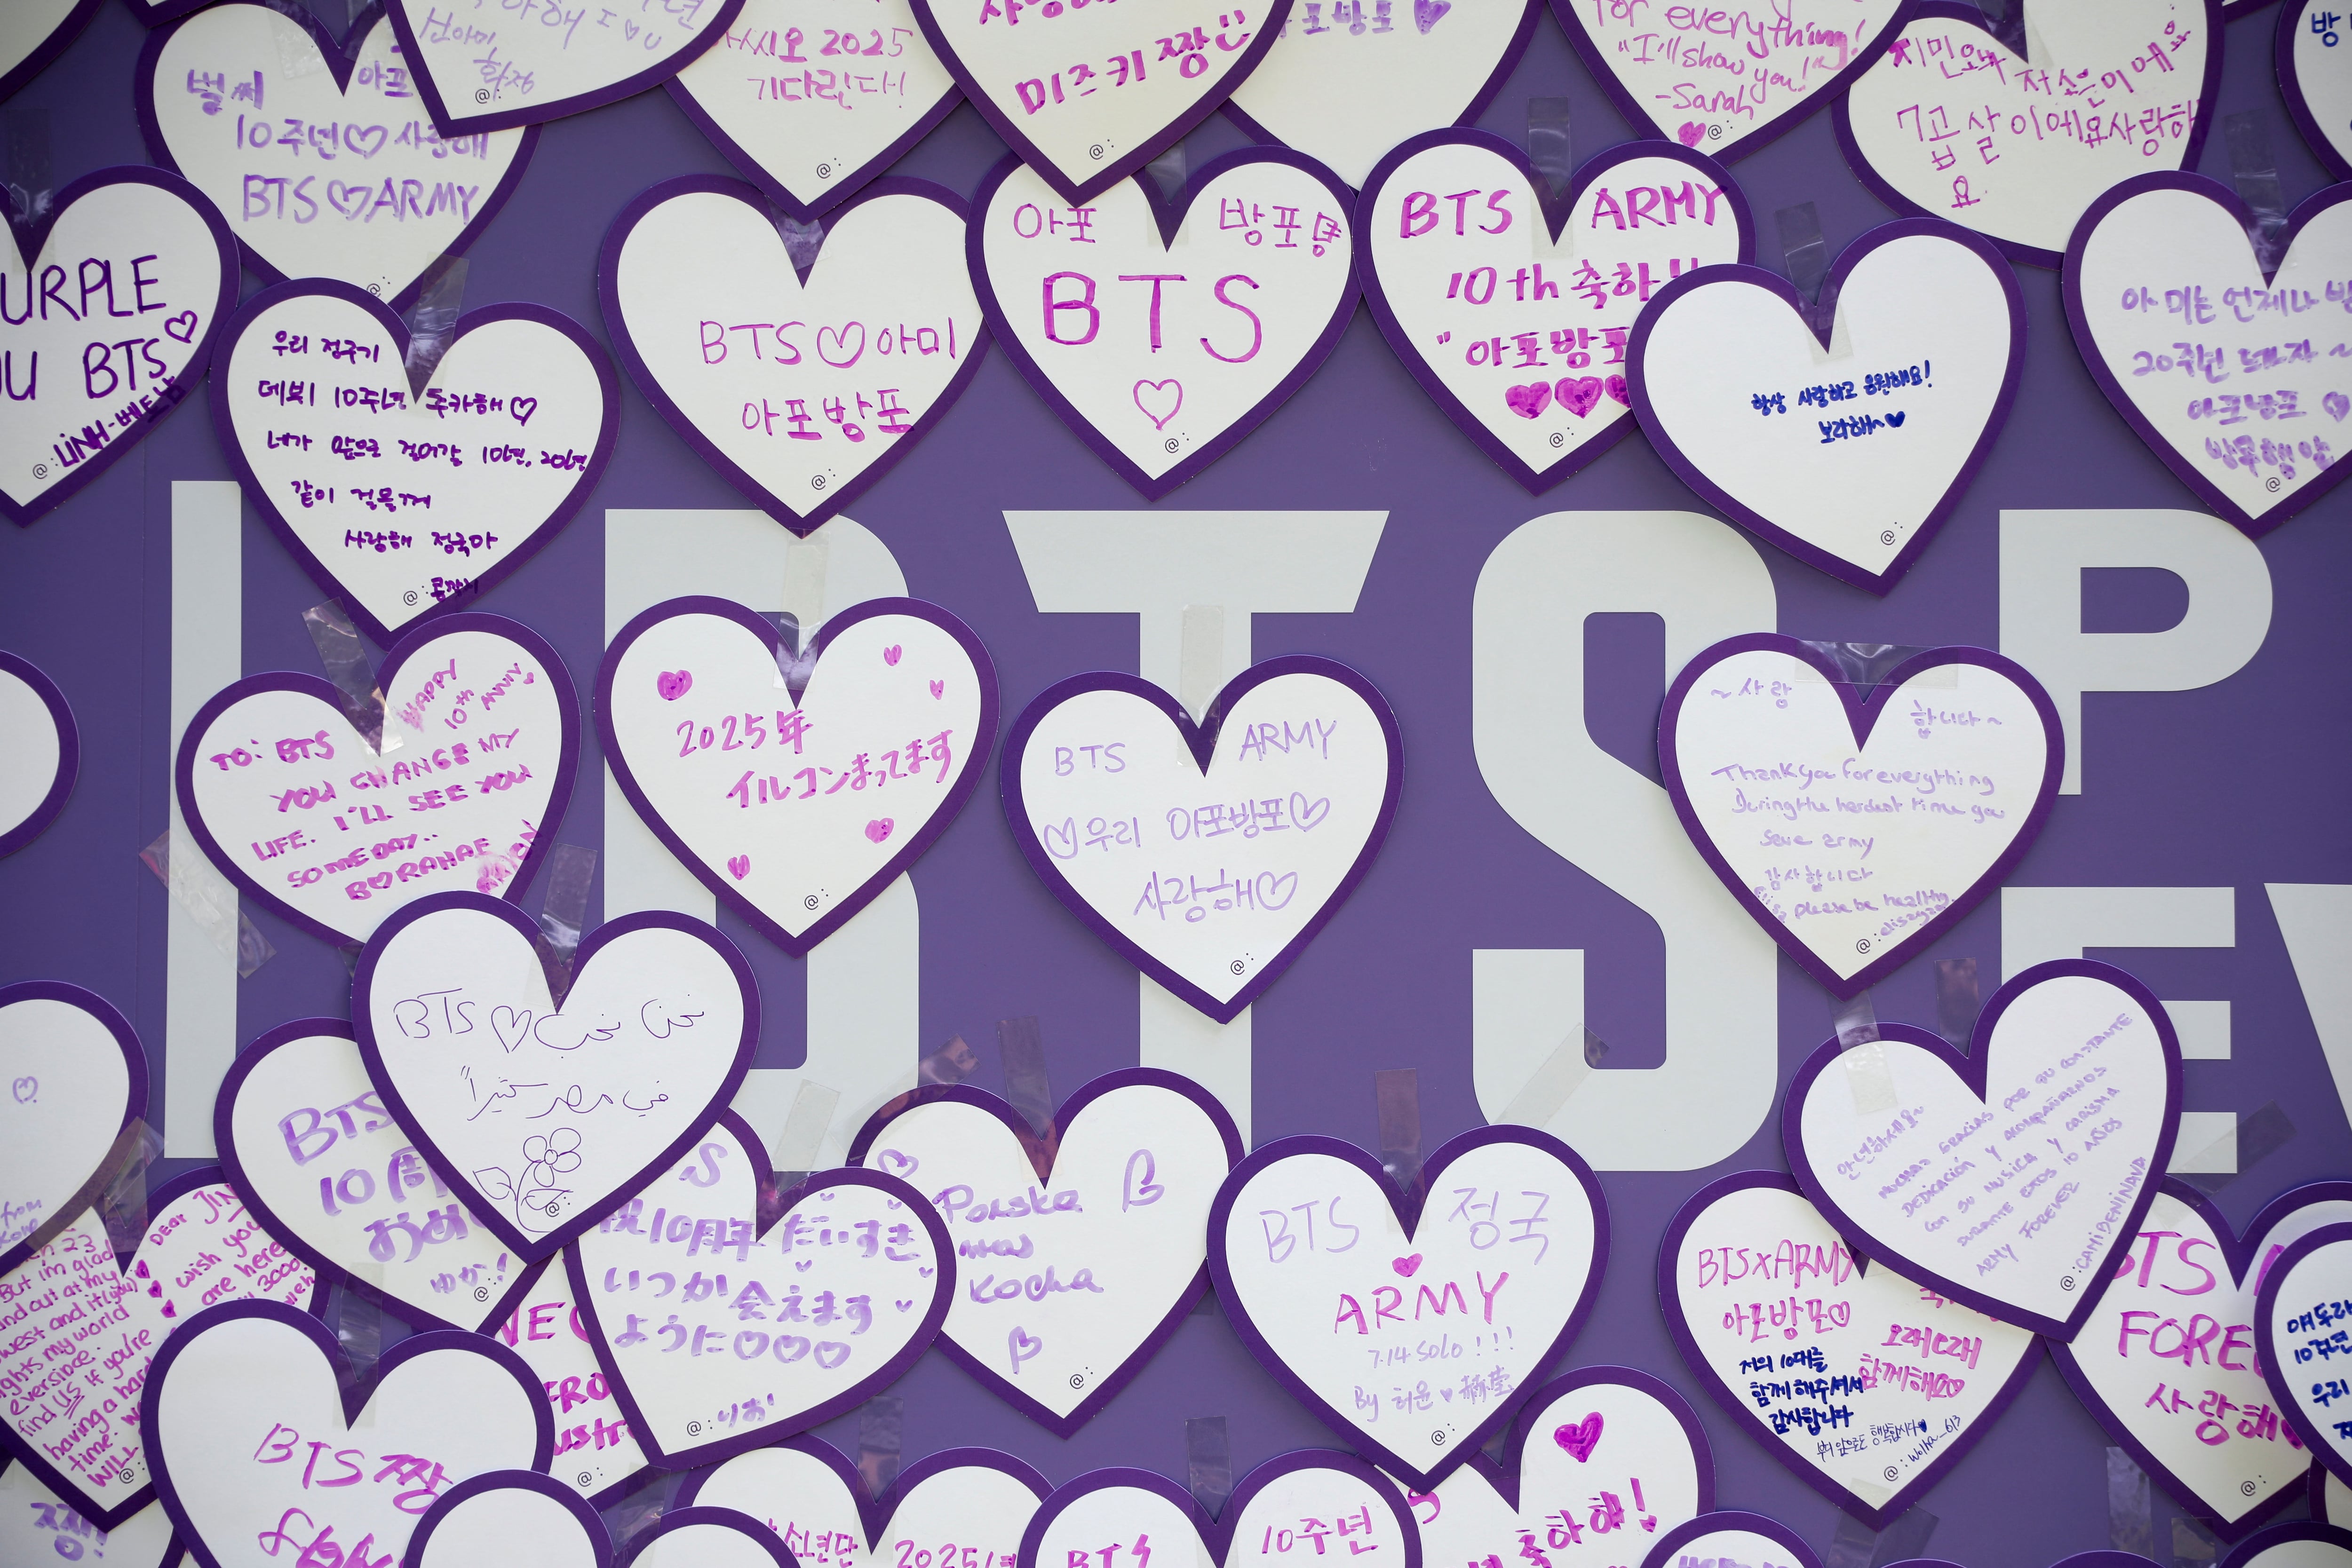 Mensajes de ánimo para la banda de chicos de K-pop BTS aparecen en una pared durante el 10º Aniversario de FESTA en Seúl, Corea del Sur, 17 de junio de 2023. (REUTERS/Kim Soo-hyeon)